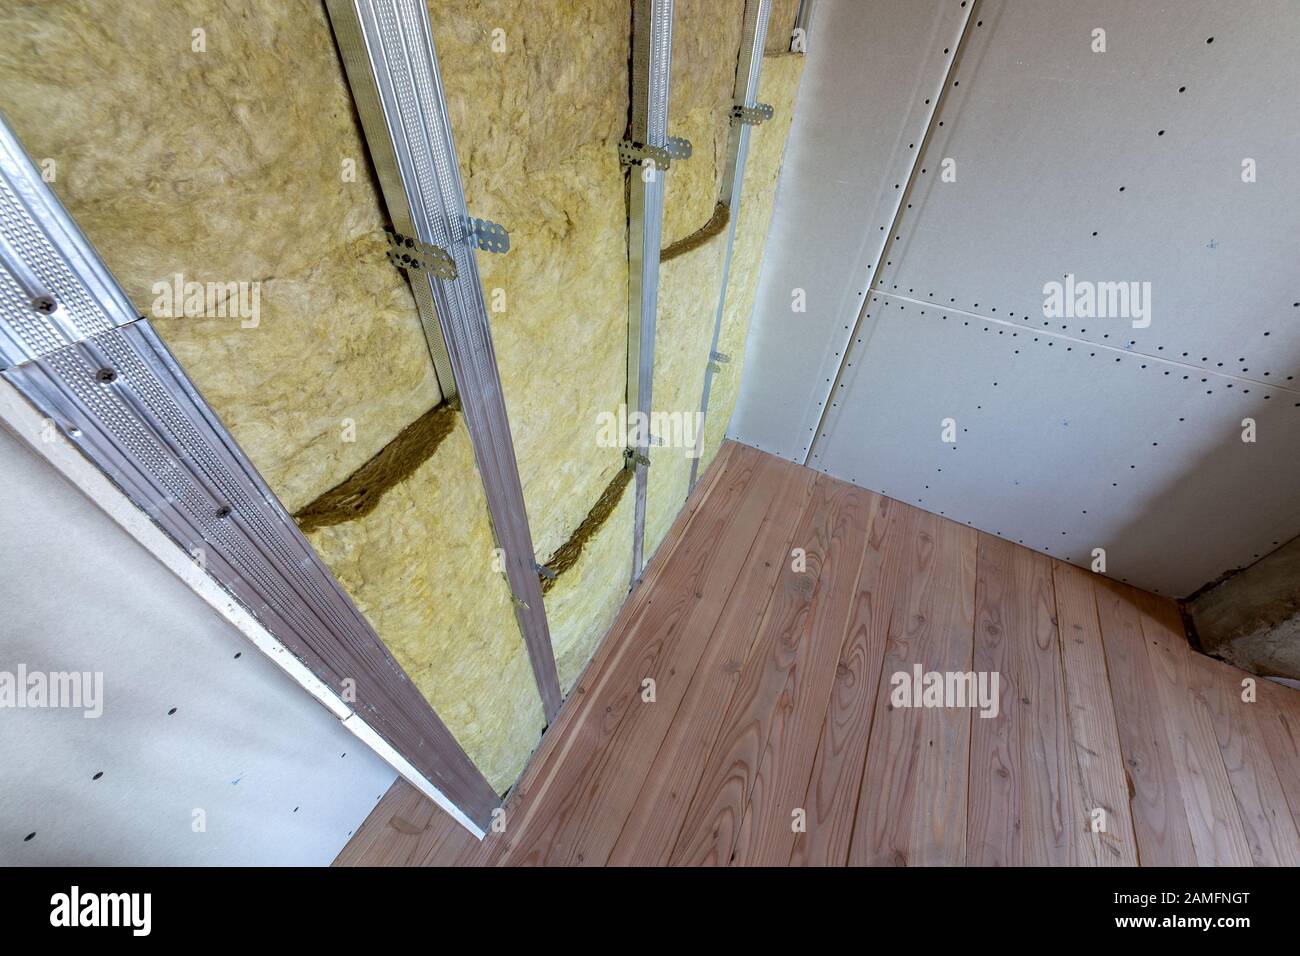 An der Wand eines Raumes unter Renovierung mit Mineralwasser Mineralwolle  Isolierung und Metallrahmen für Gipskarton Platten vorbereitet  Stockfotografie - Alamy